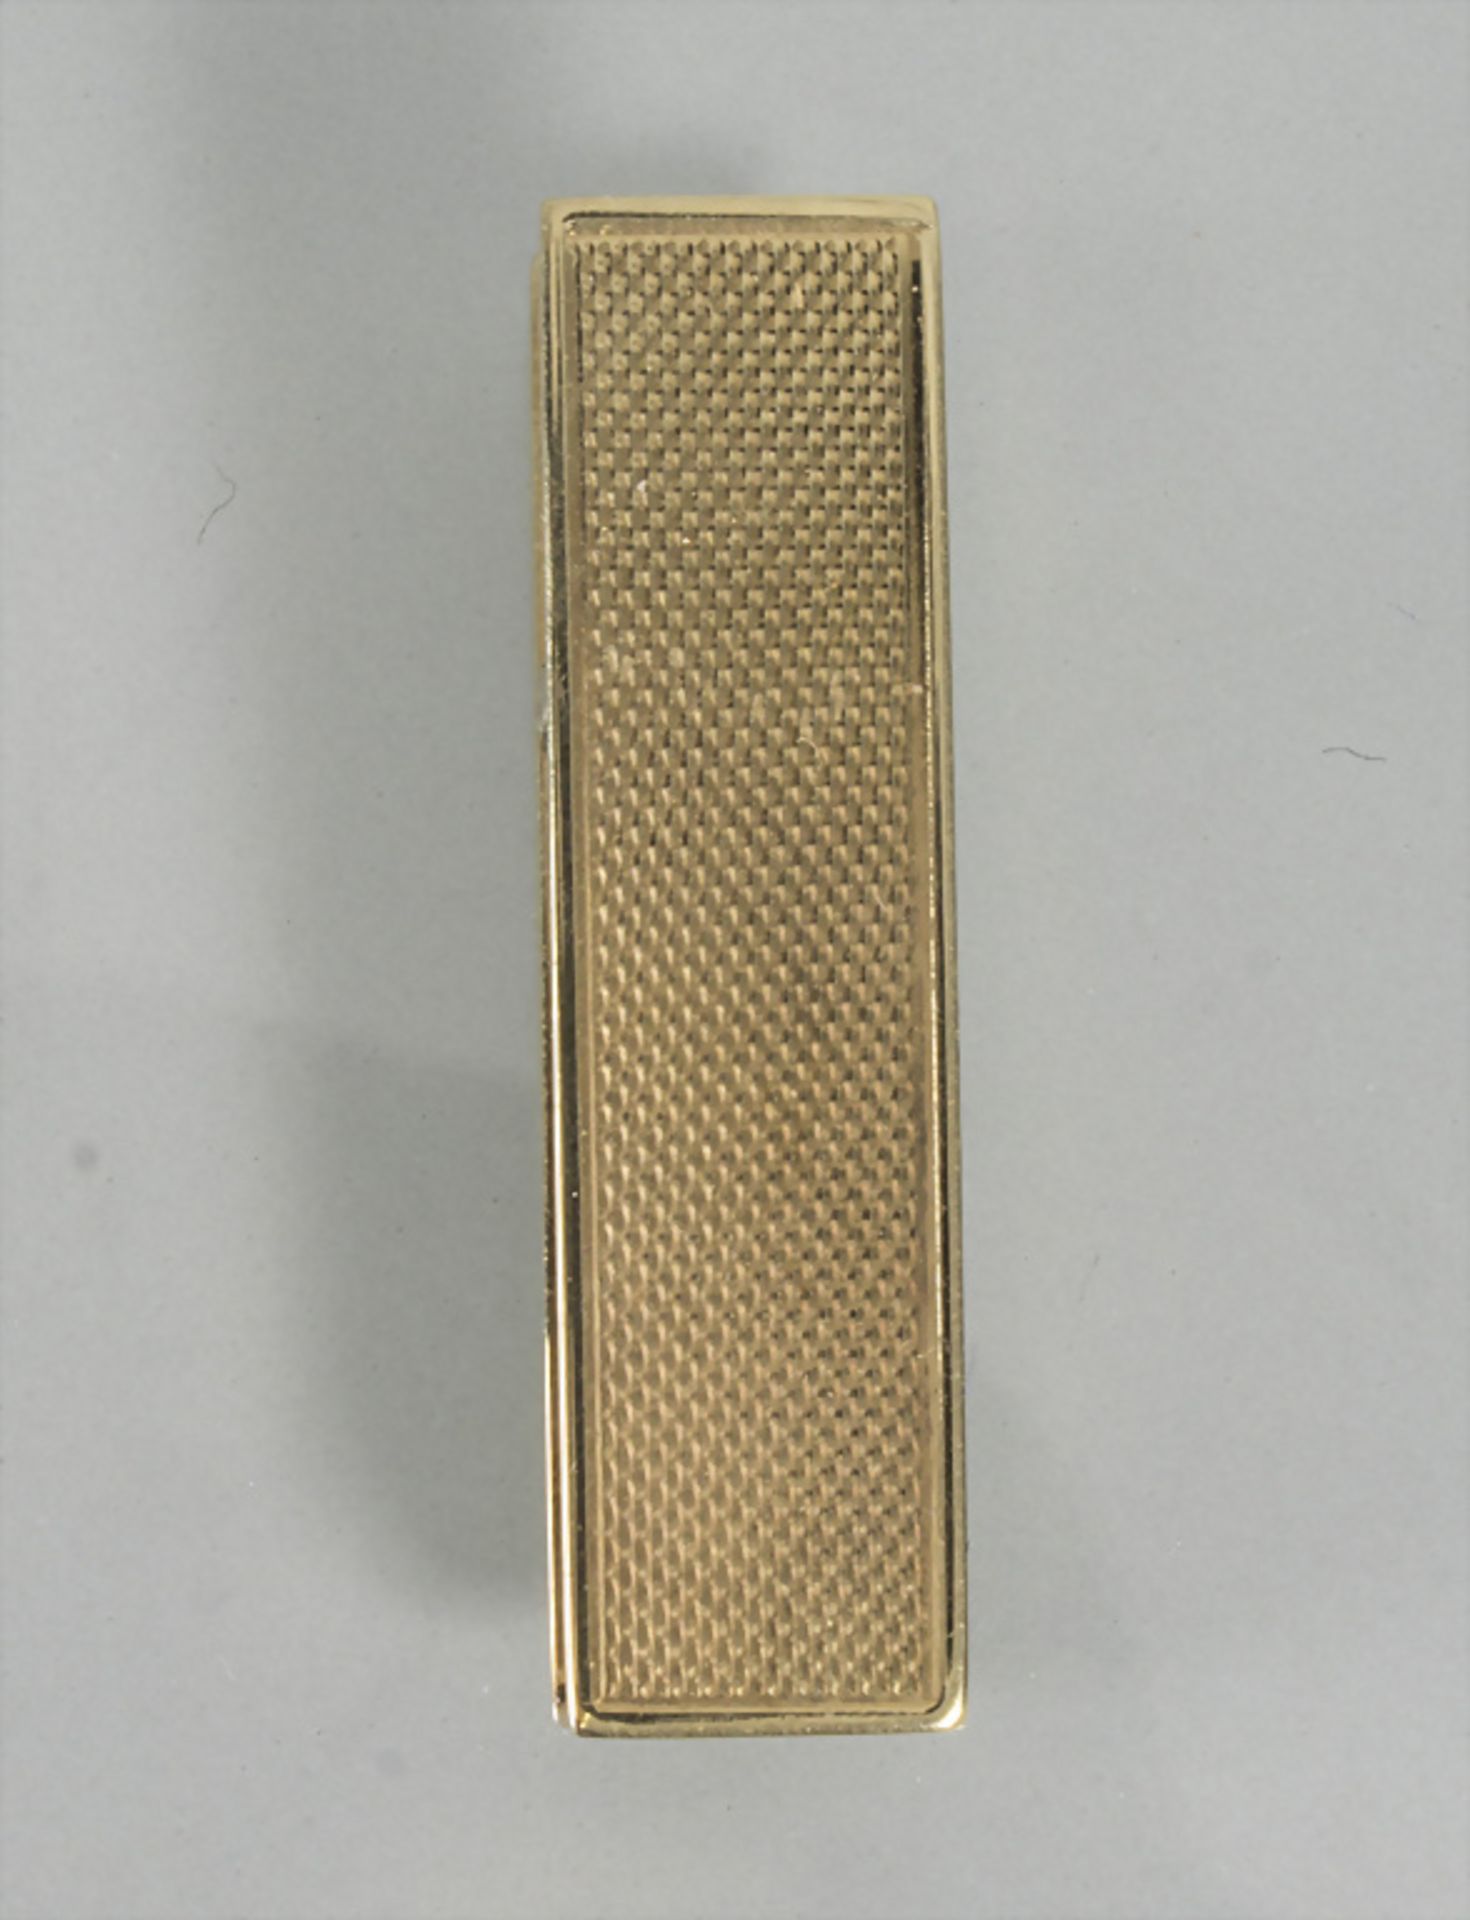 Krawattennadel / A 14 ct gold tie pin